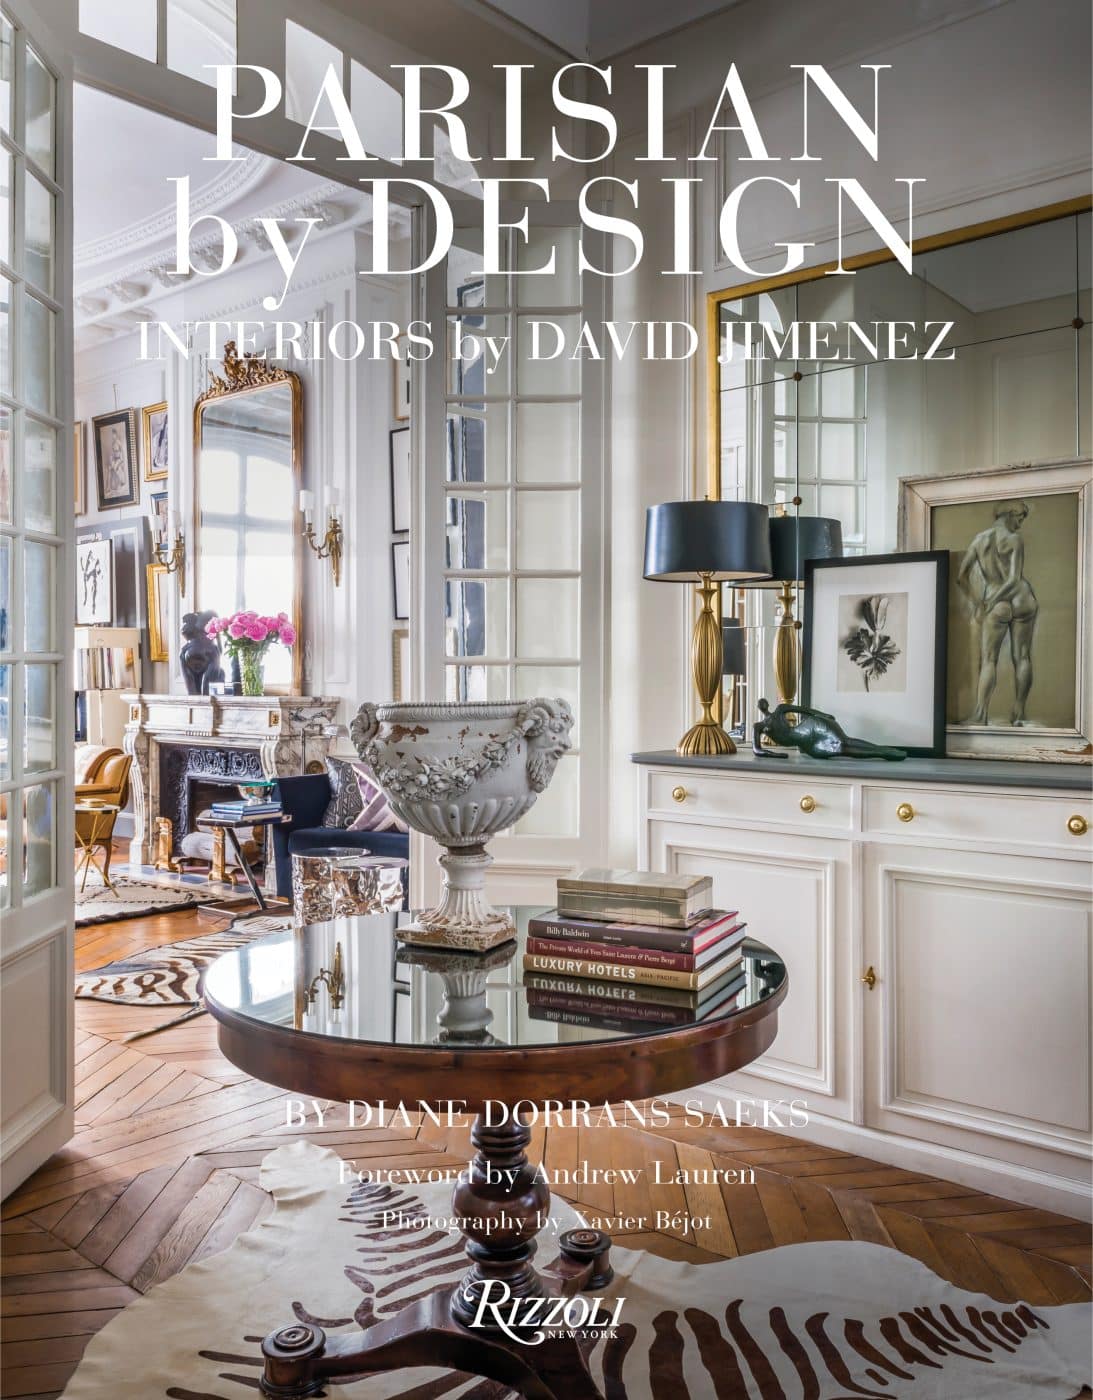 Rizzoli Parisian by Design book by interior designer David Jimenez cover 